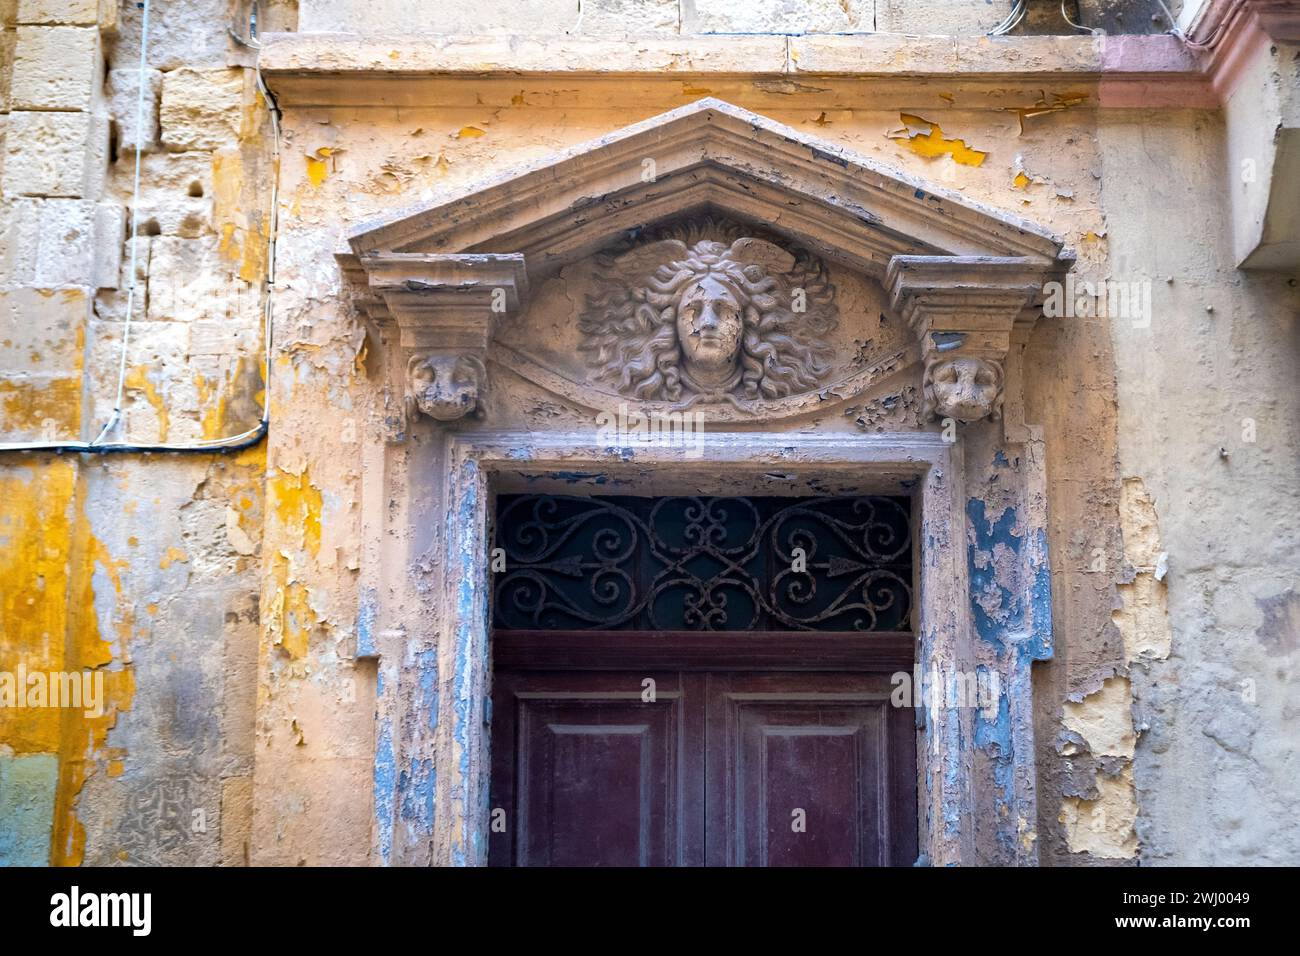 Faded, flaked paint on a doorway in Valletta, Malta Stock Photo